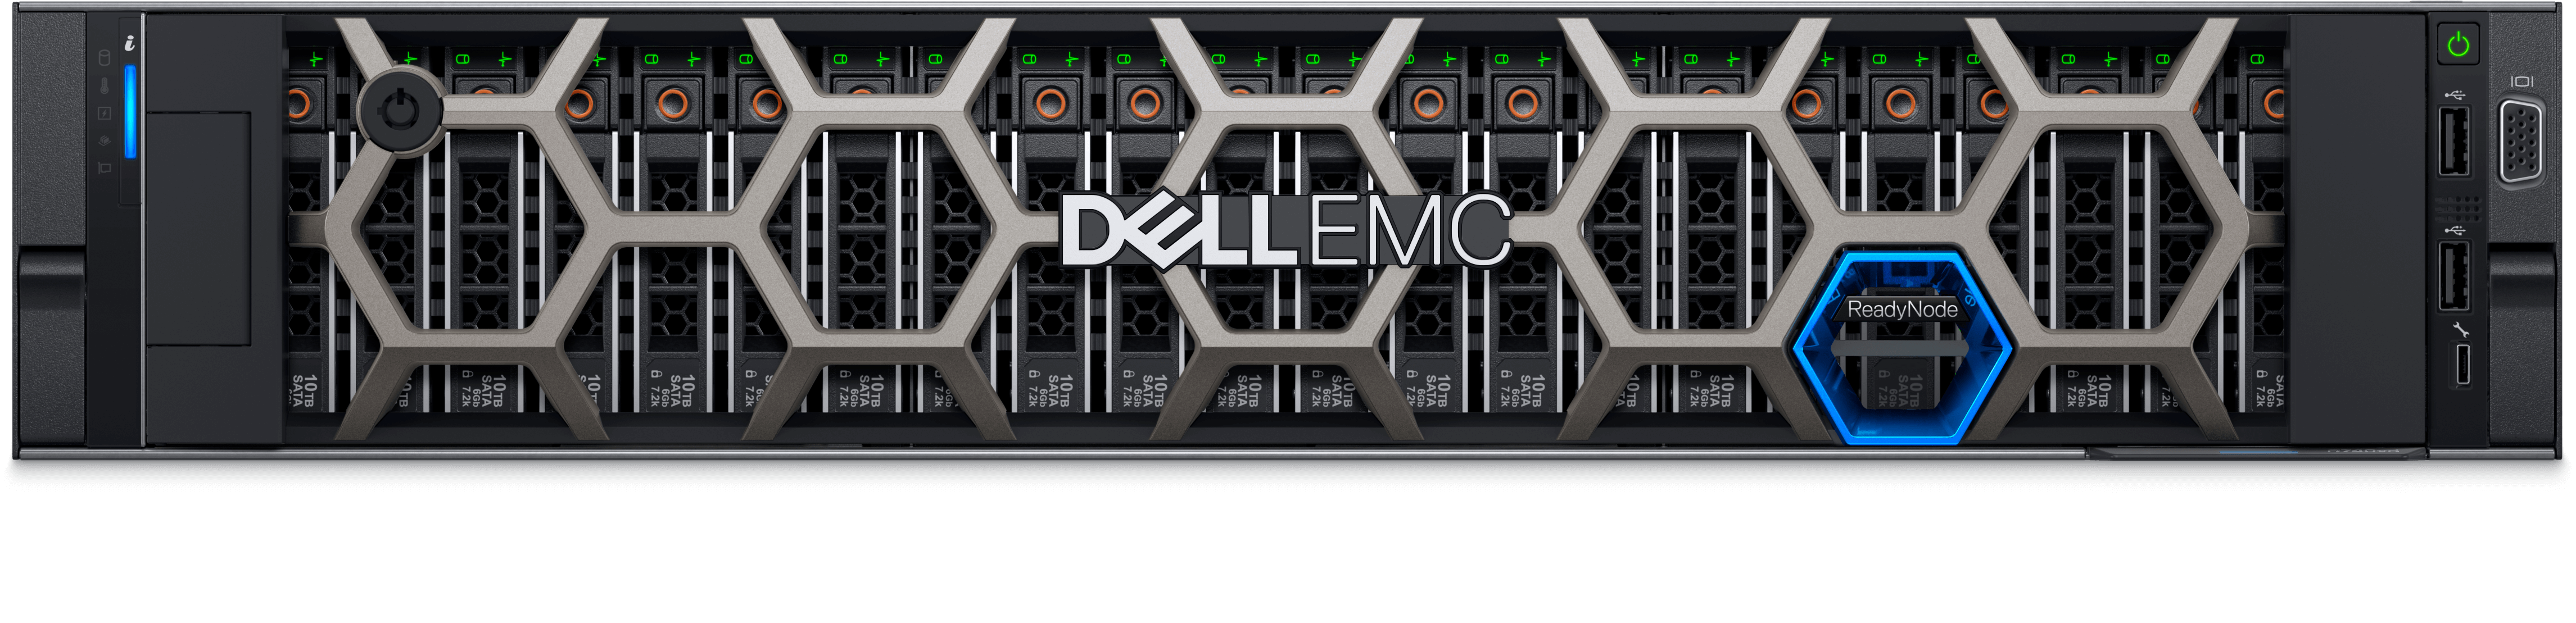 EMC Server Logo - PowerEdge Server Solutions | Dell EMC US